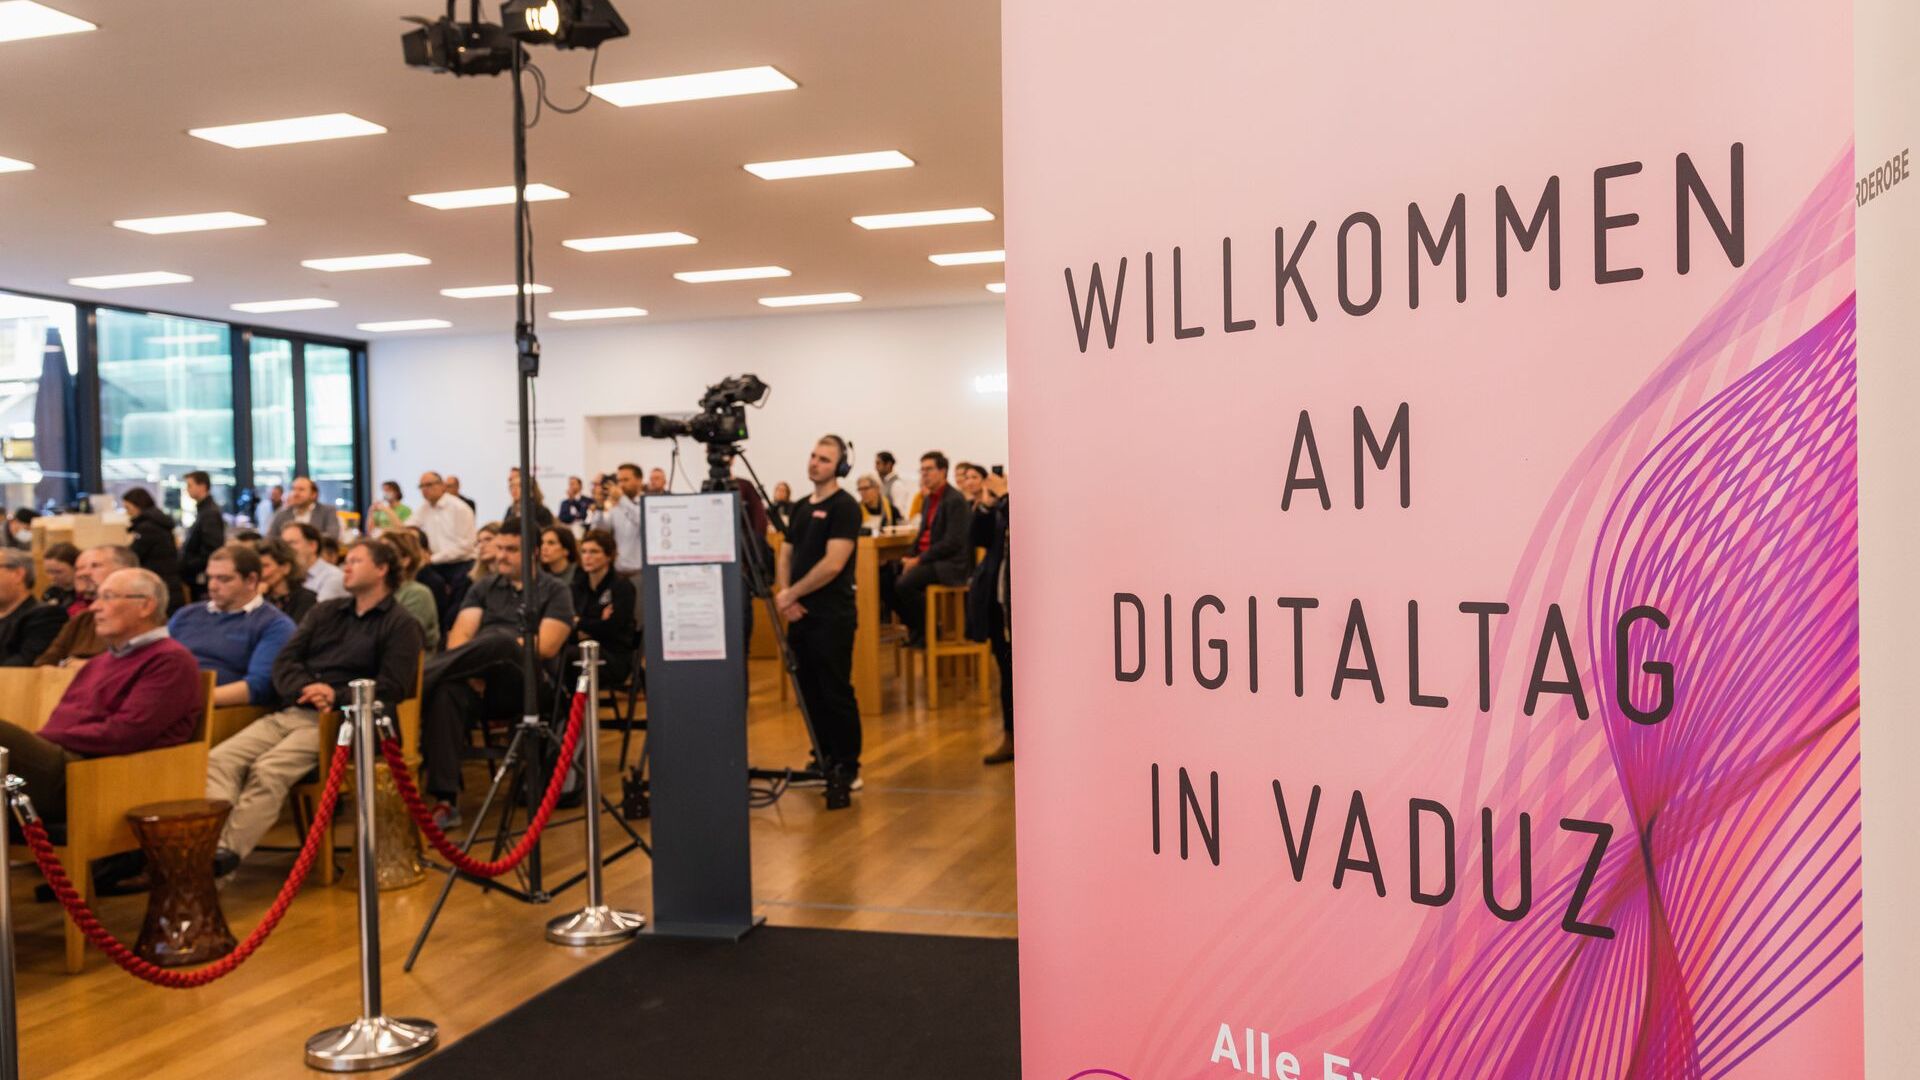 De "Digitaltag Vaduz" werd op zaterdag 6 november 2021 verwelkomd door het Kunstmuseum van de hoofdstad van het Vorstendom Liechtenstein